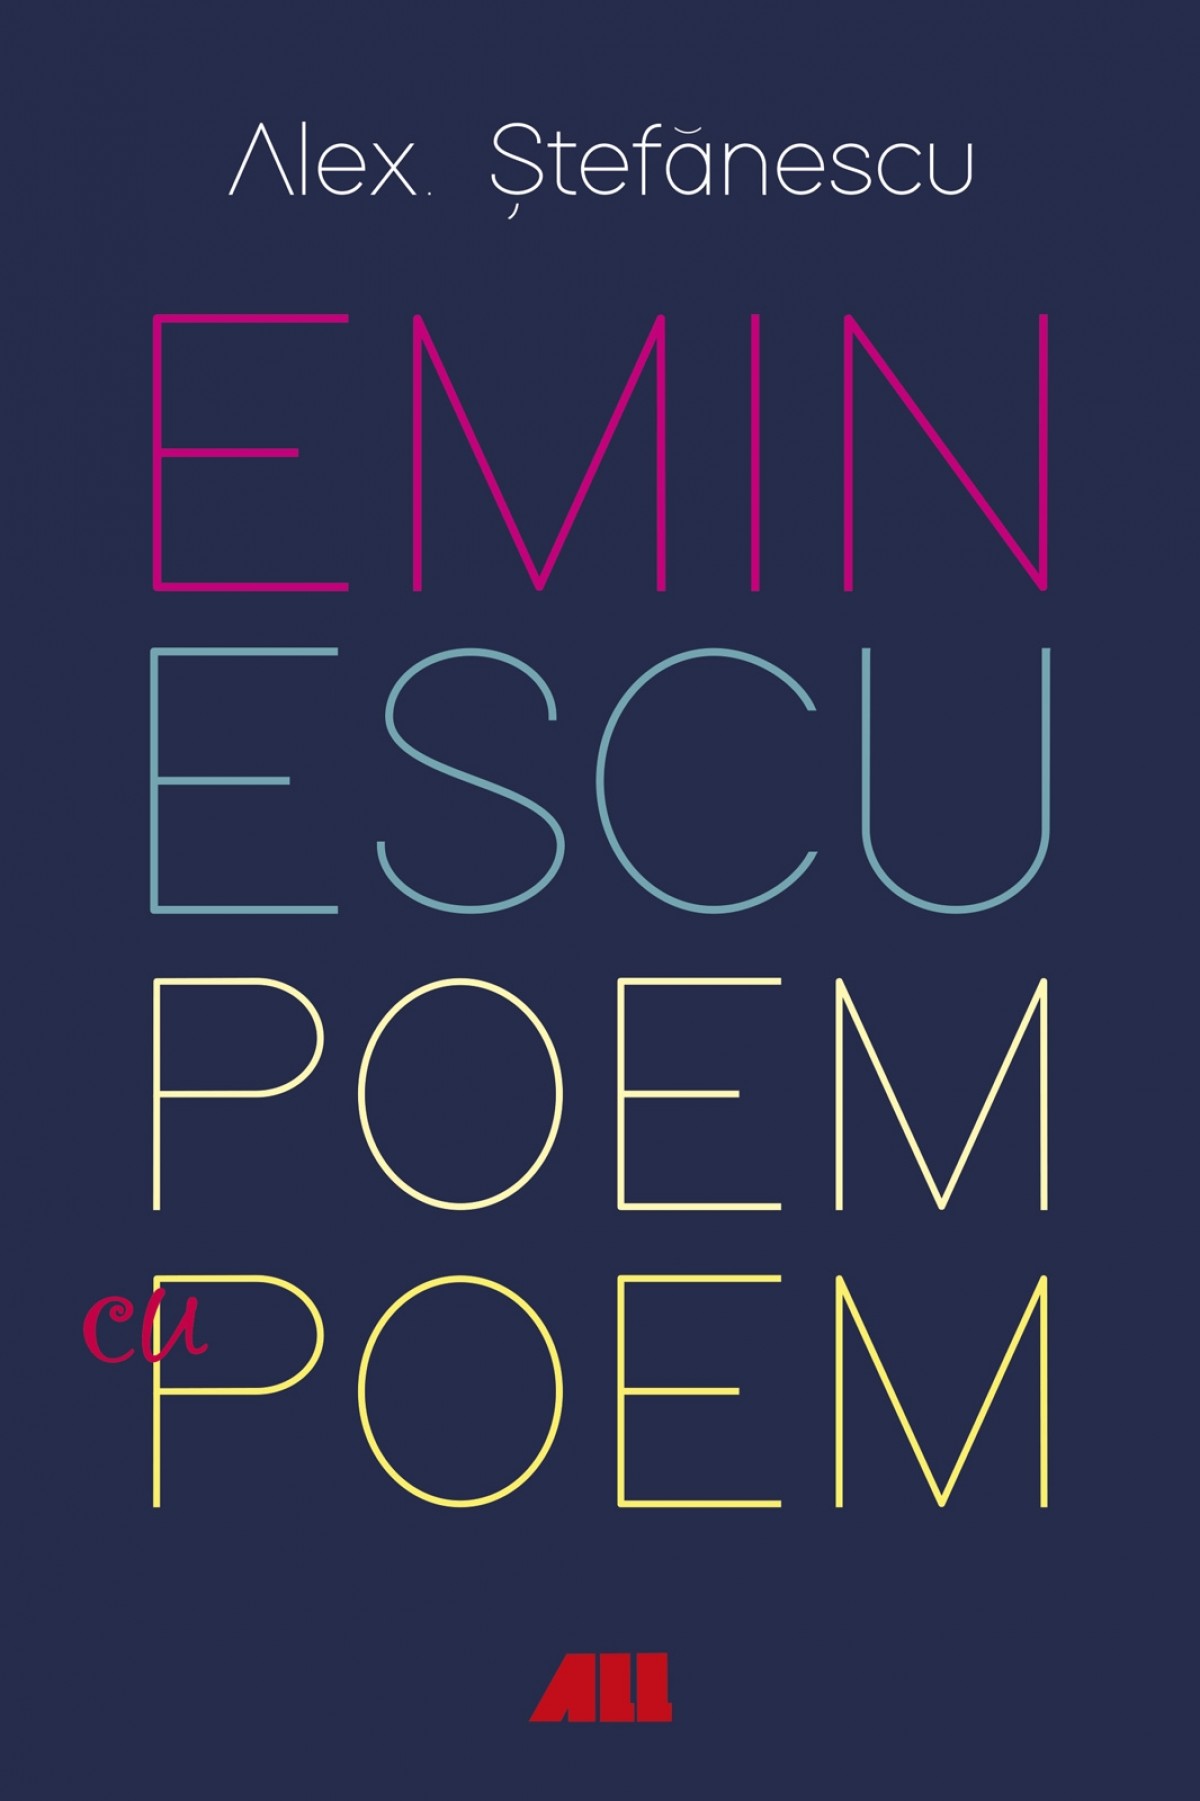 Eminescu, poem cu poem. La o noua lectura | Alex Stefanescu ALL poza bestsellers.ro